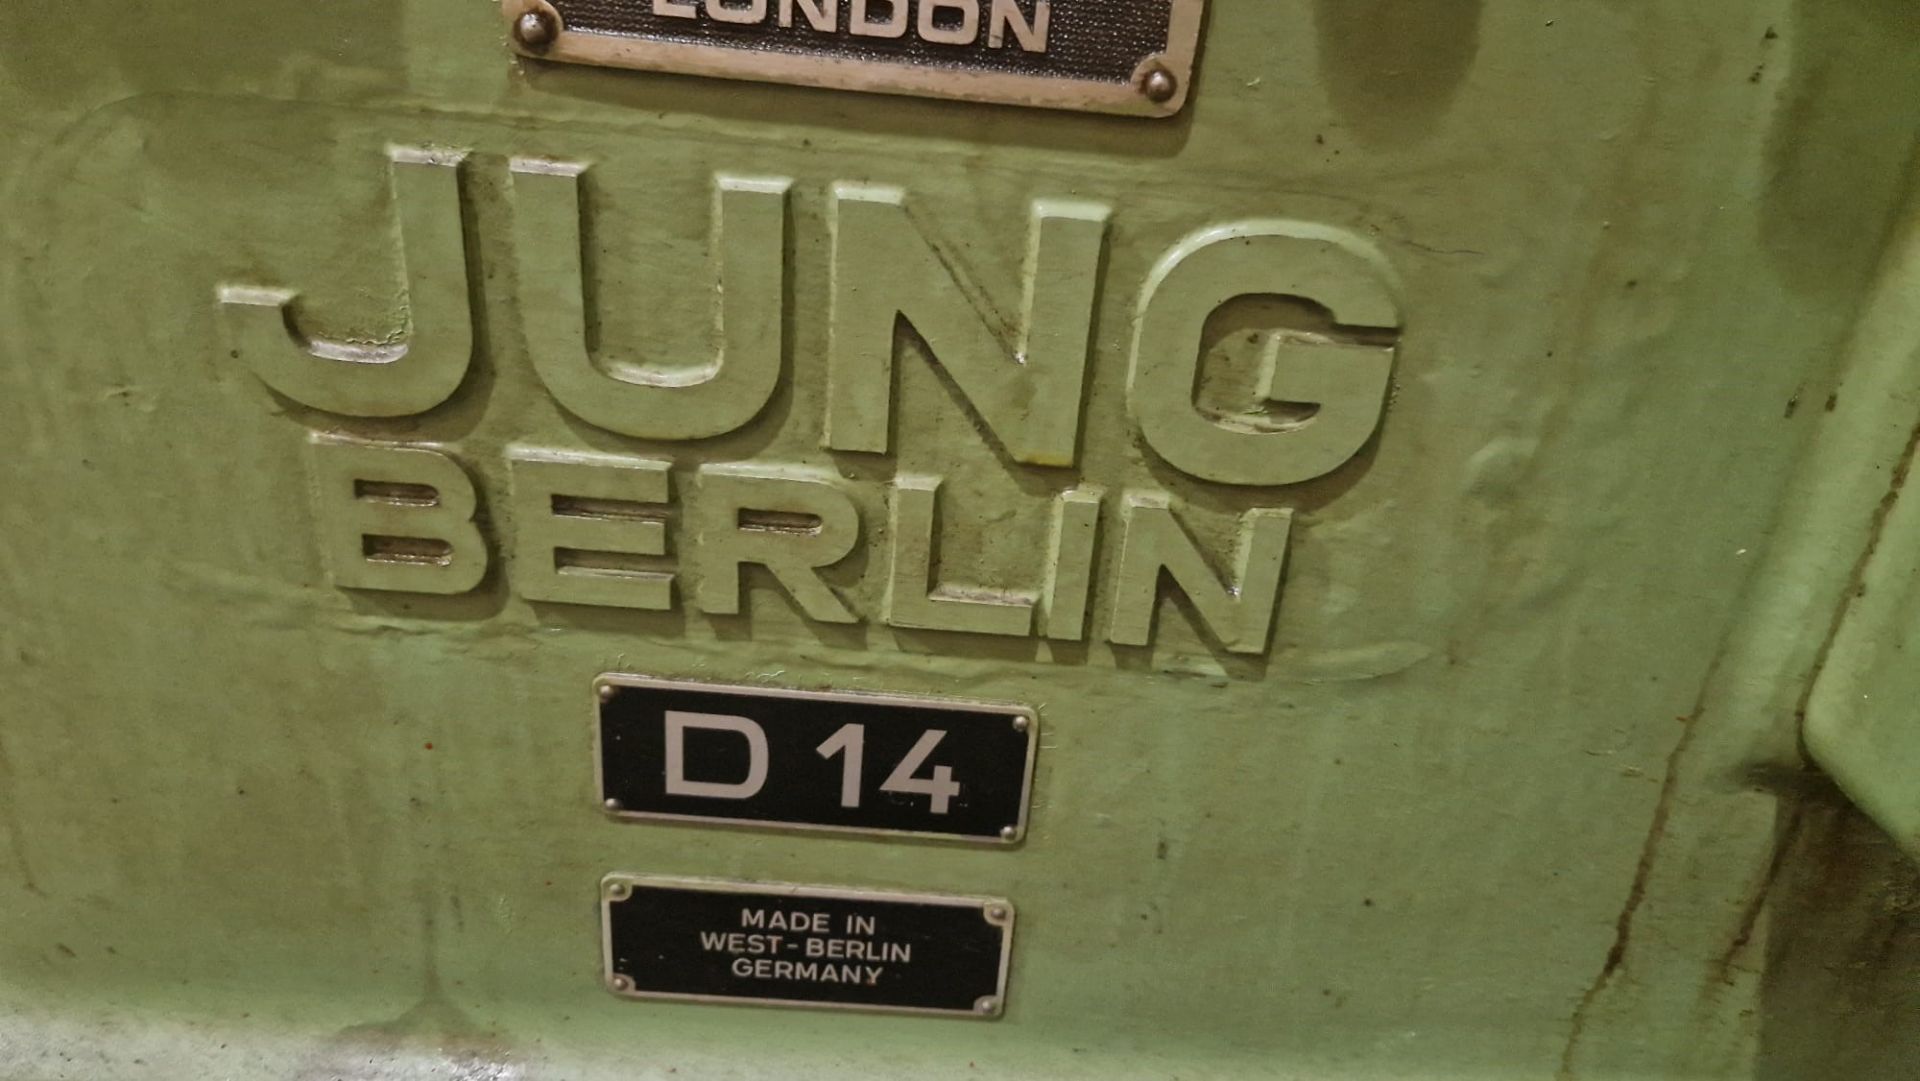 Jung Berlin Model D14 Internal Grinder - Image 10 of 11